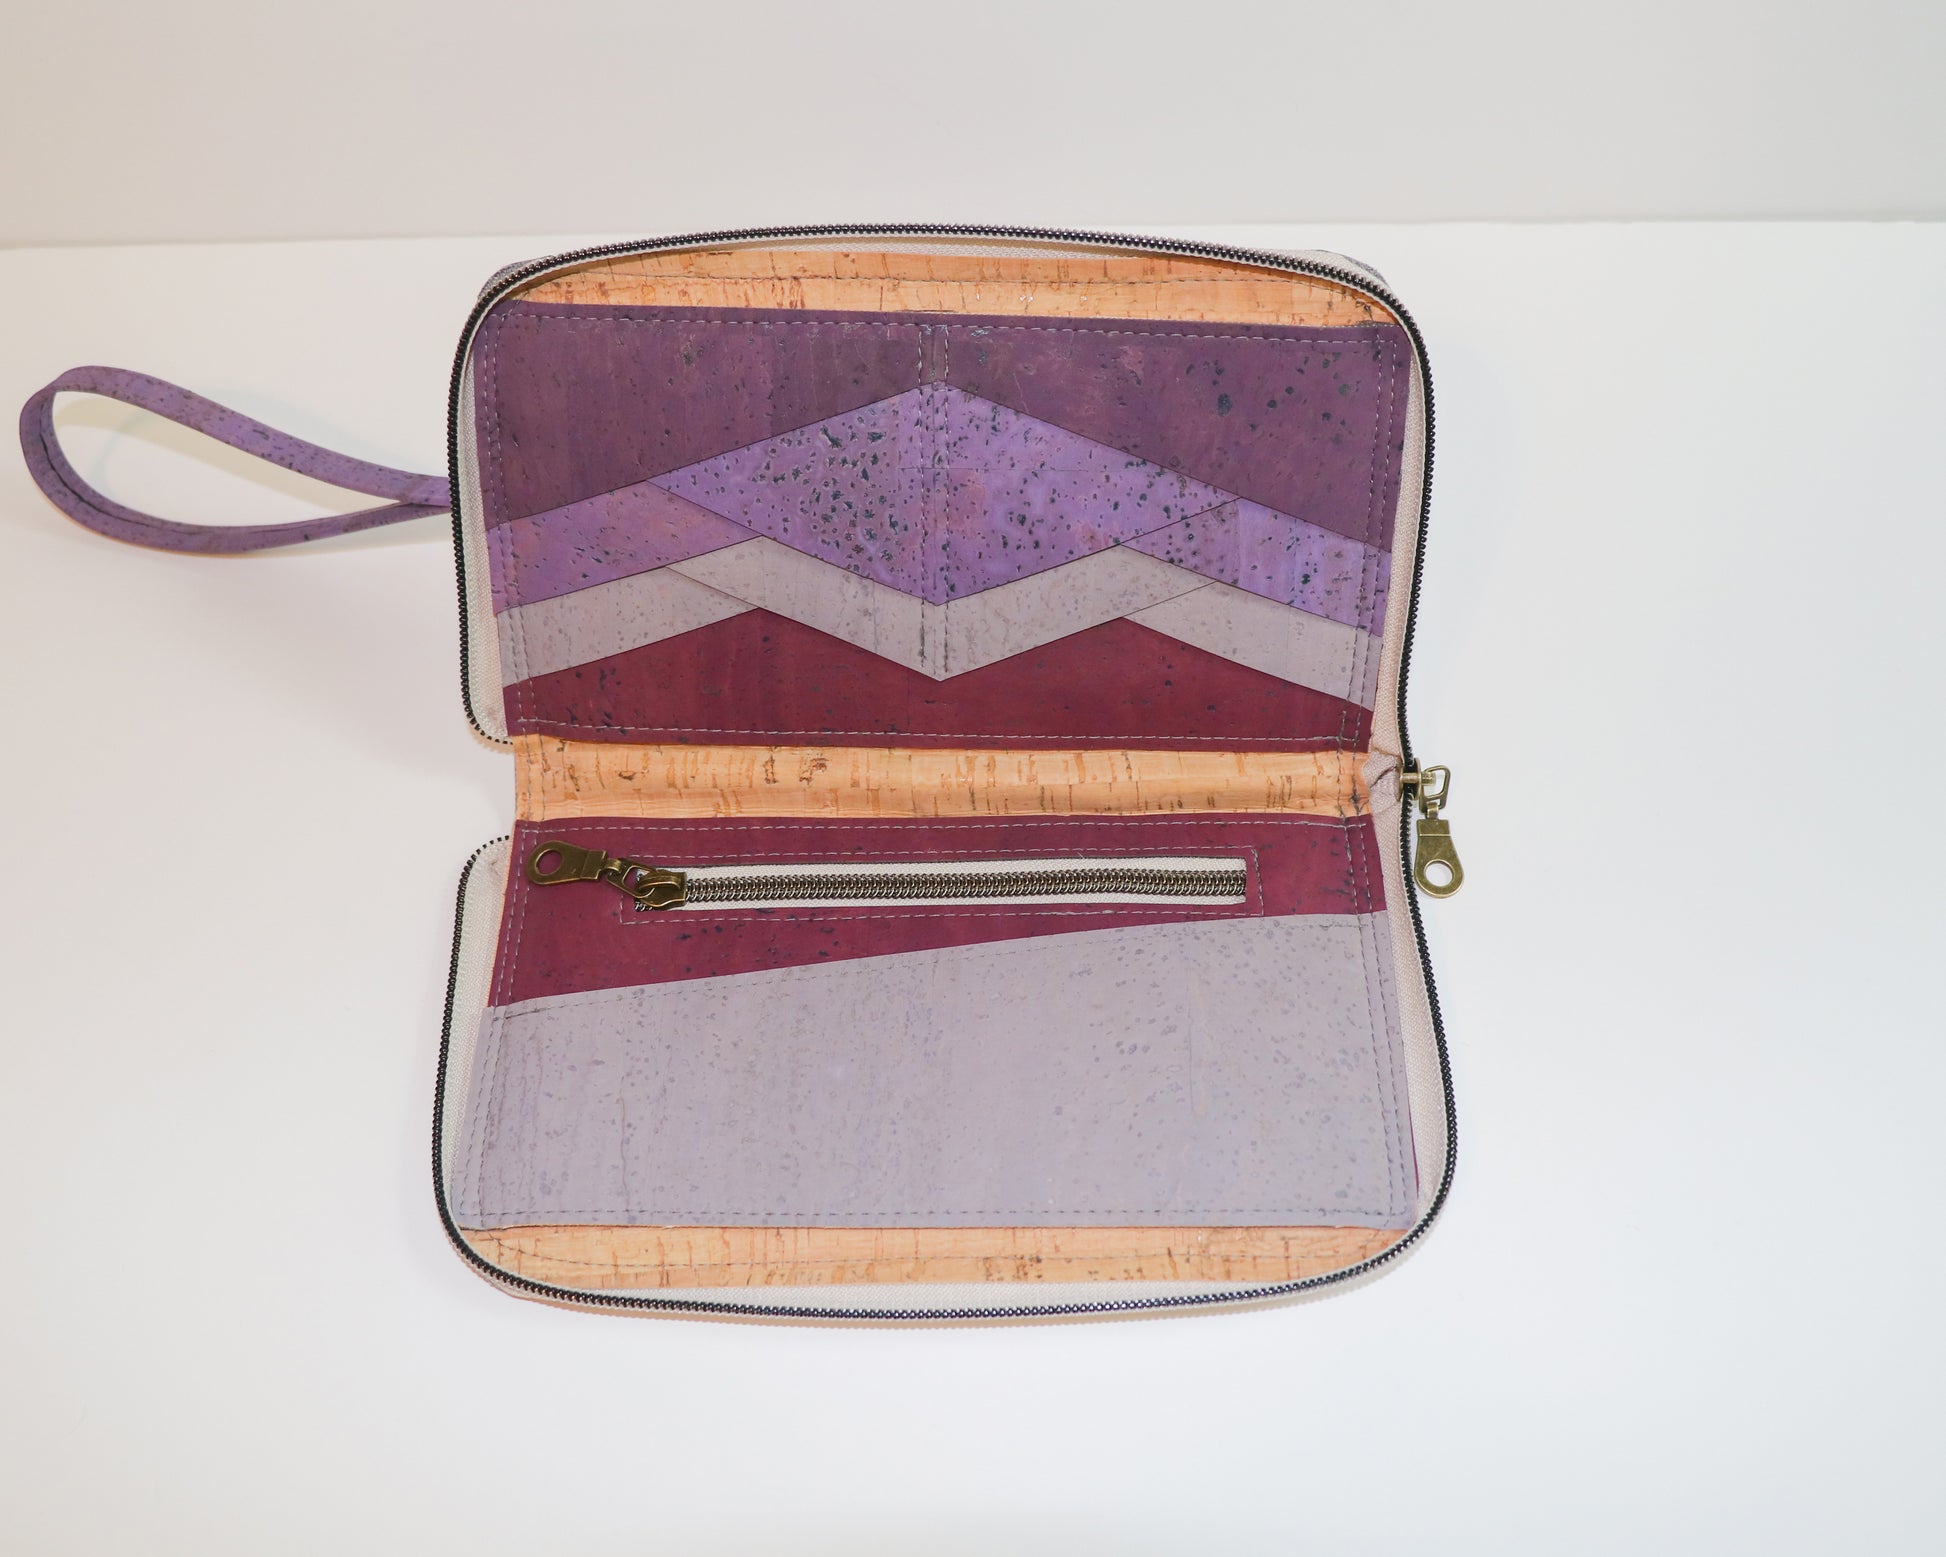 purple clutch wallet, inside view